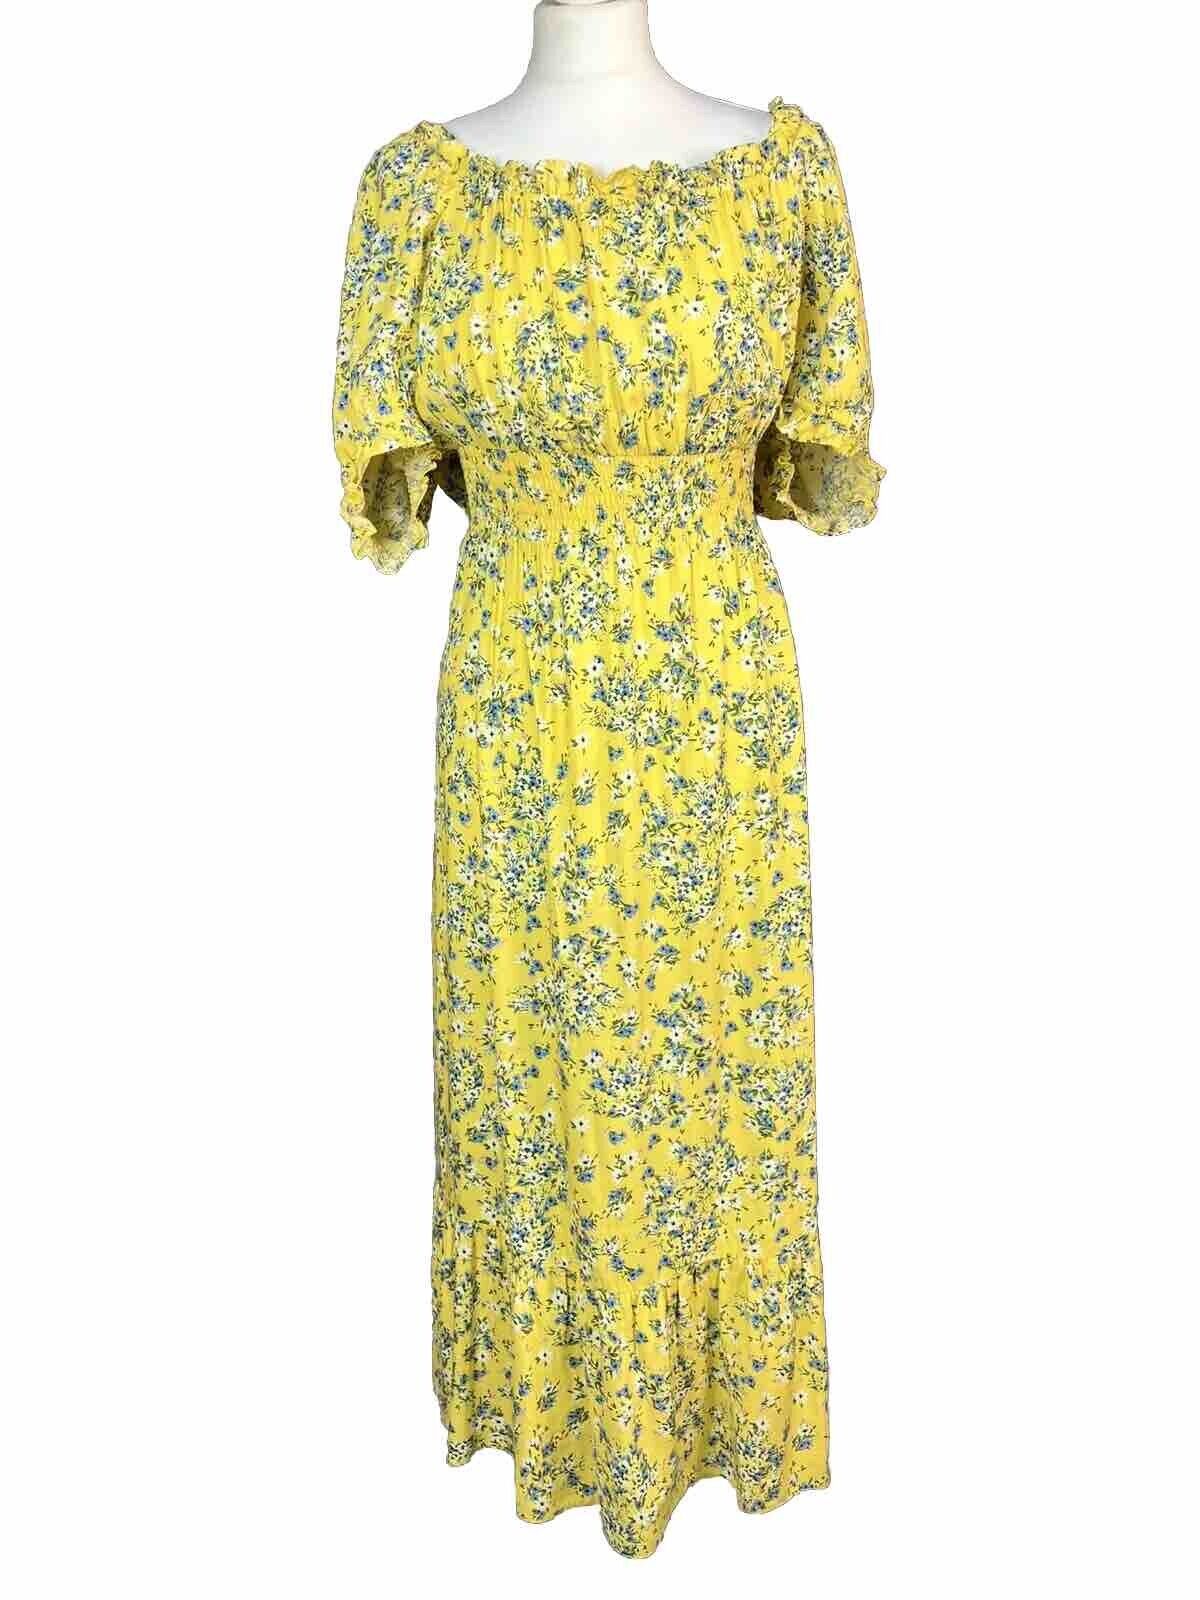 M&Co Yellow Midi Dress UK 16 Floral Bardot Shirred Boho Gypsy Peasant Summer